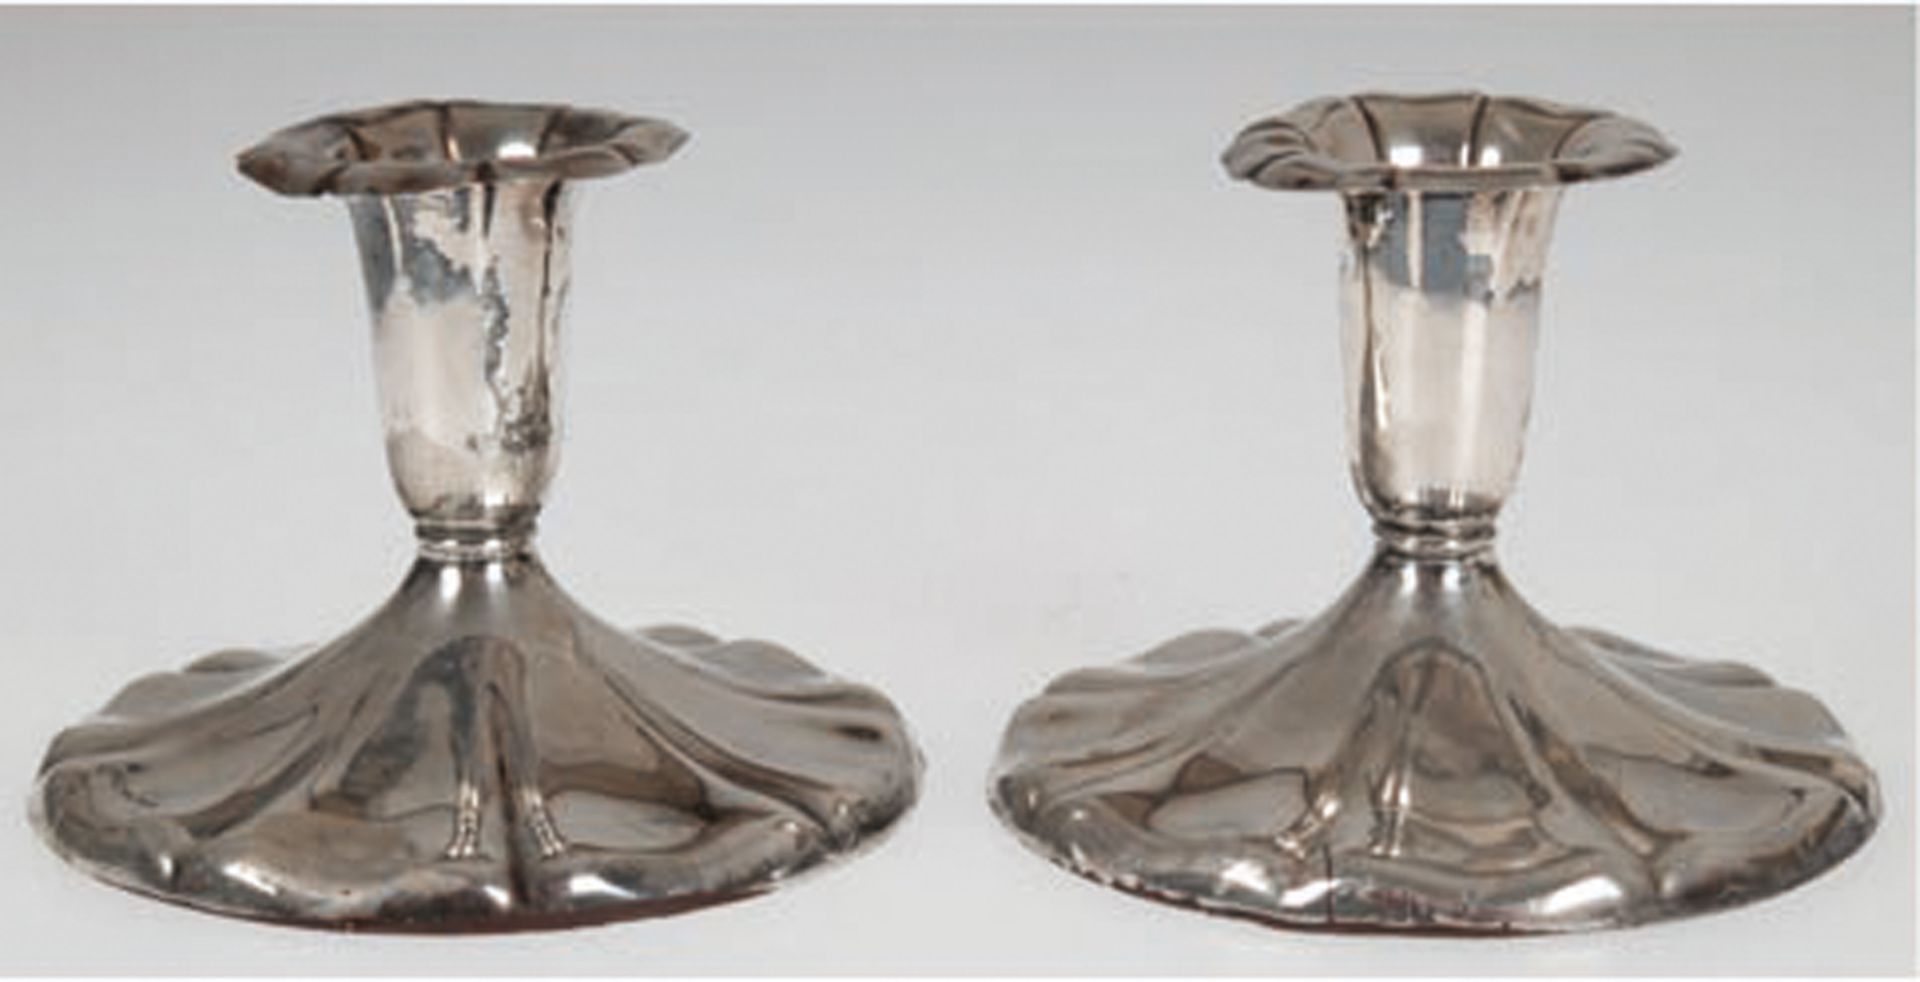 Paar Kerzenleuchter, 813er Silber, punziert, runder, beschwerter, geschweifter Stand, H. 7,5 cm, Dm